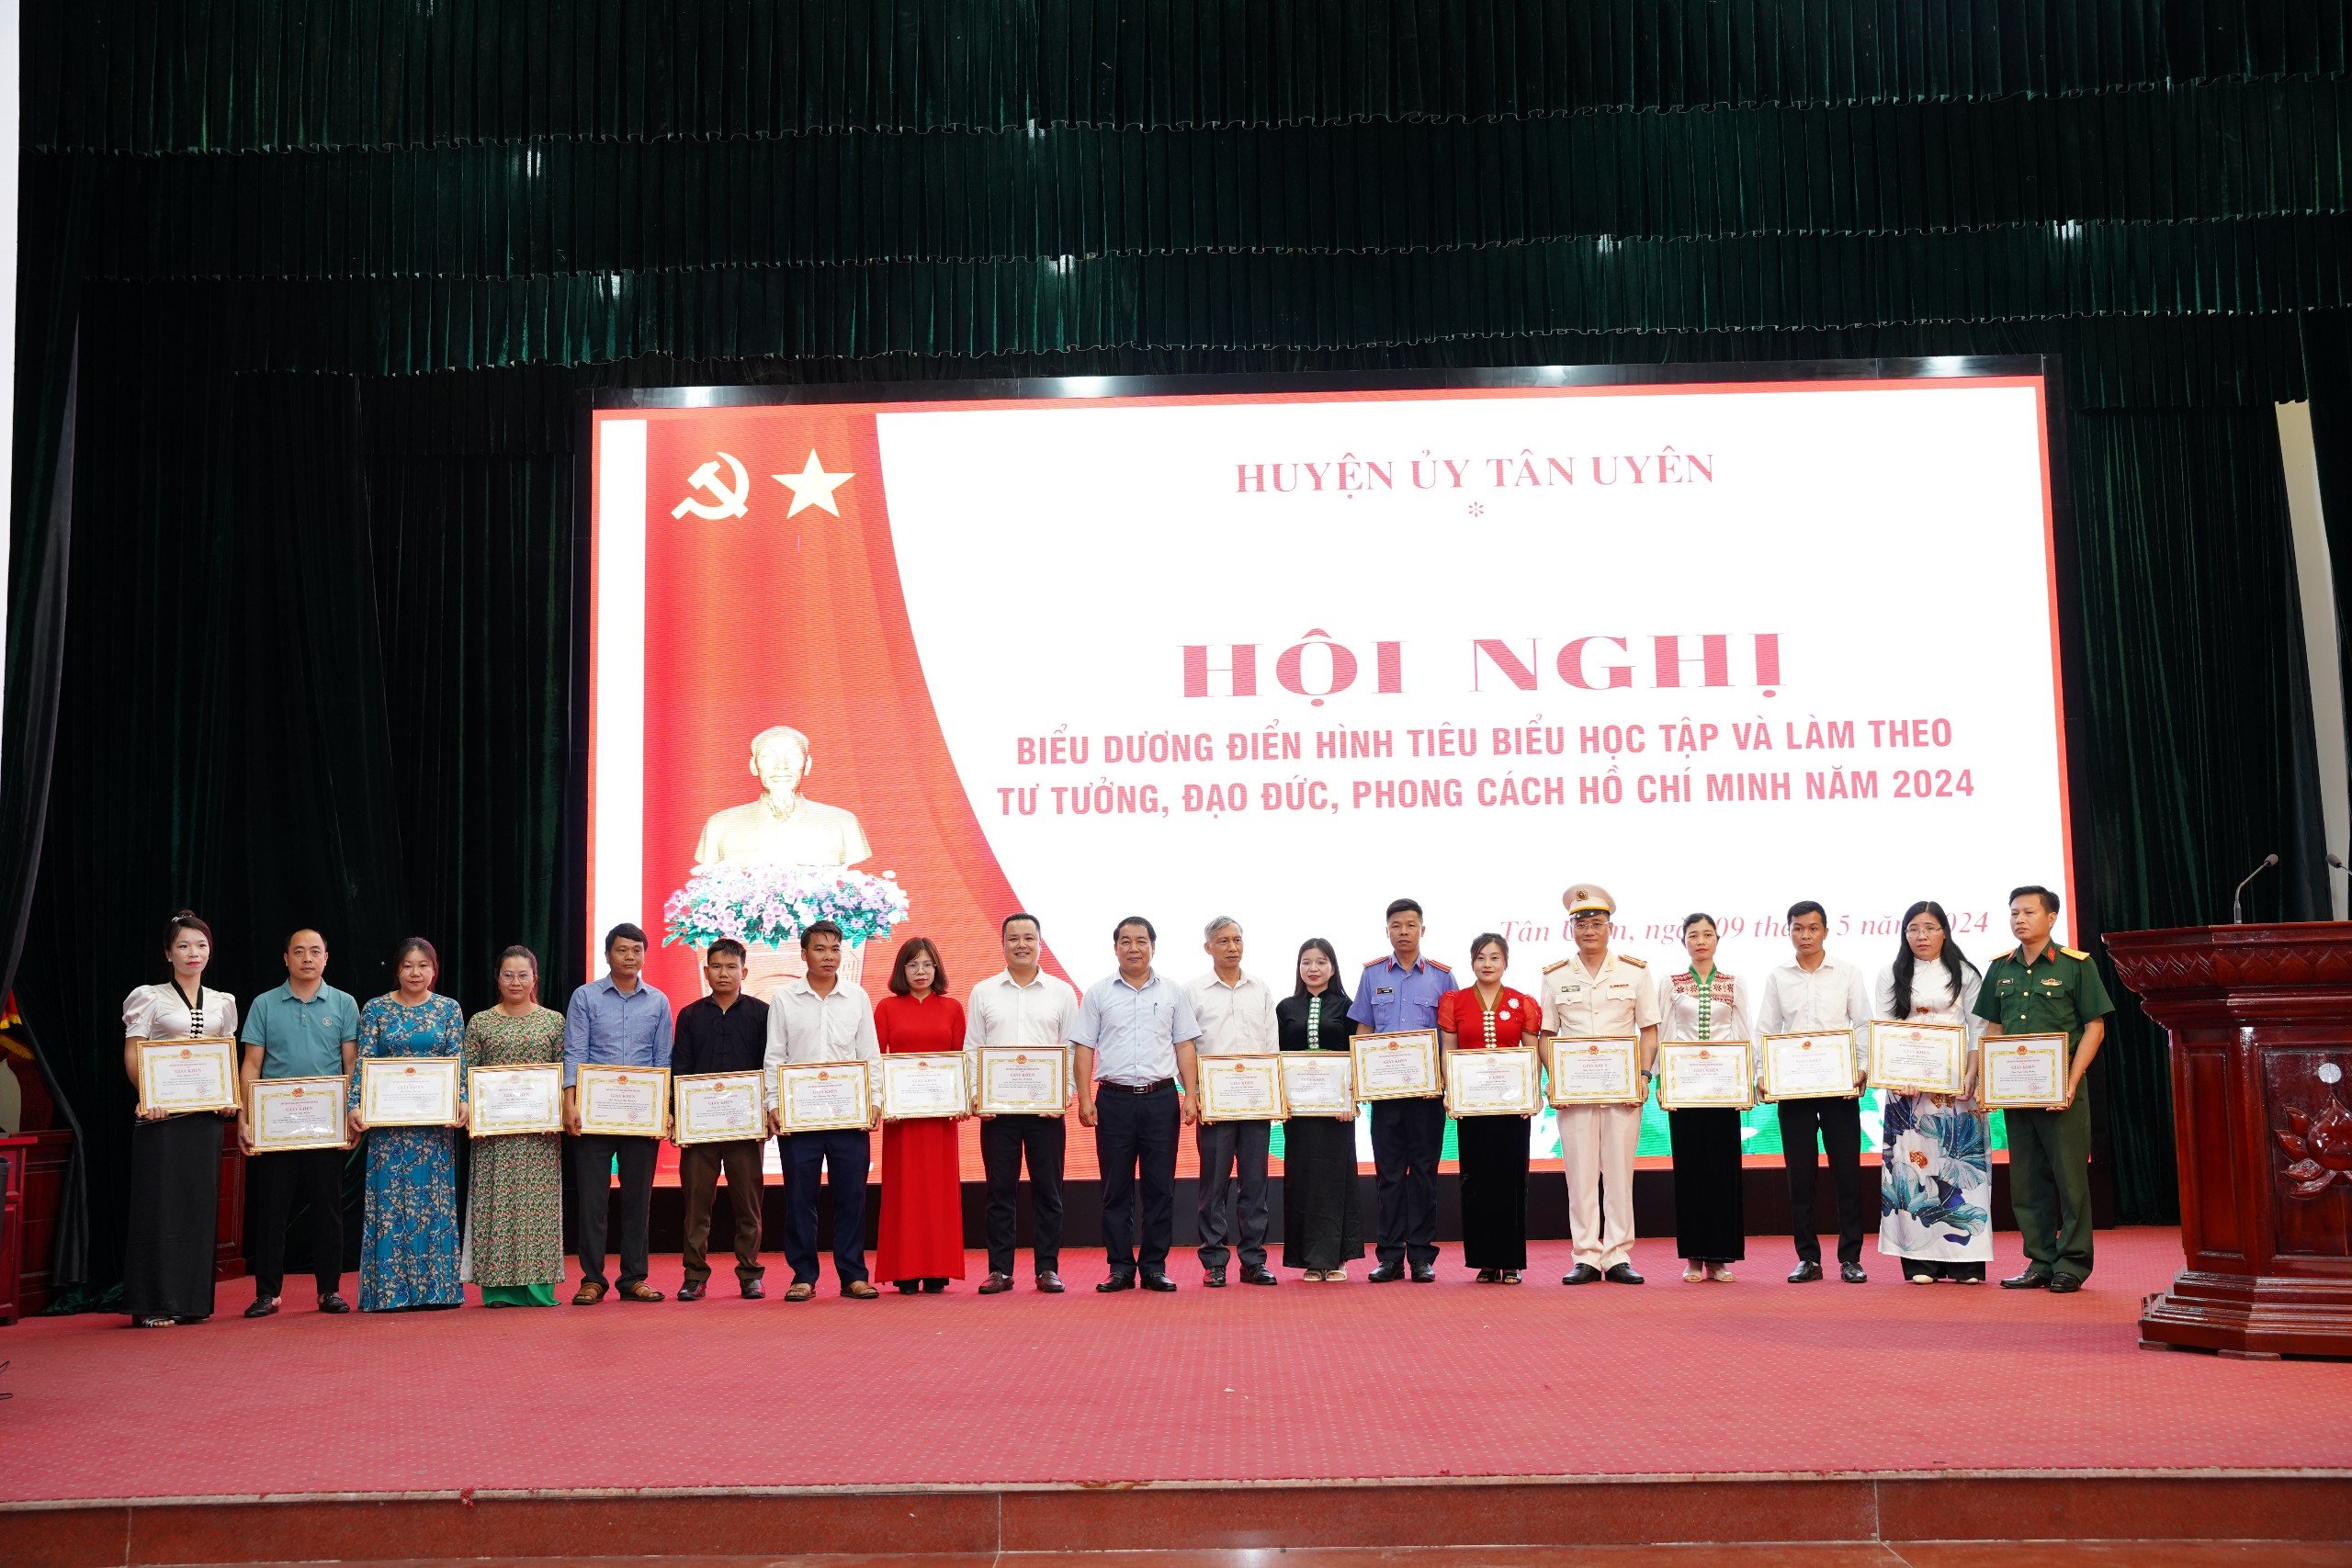 Đồng chí Nguyễn Thanh Văn - Phó Bí thư Huyện ủy, Chủ tịch UBND huyện trao Giấy khen cho các các nhân tiêu biểu